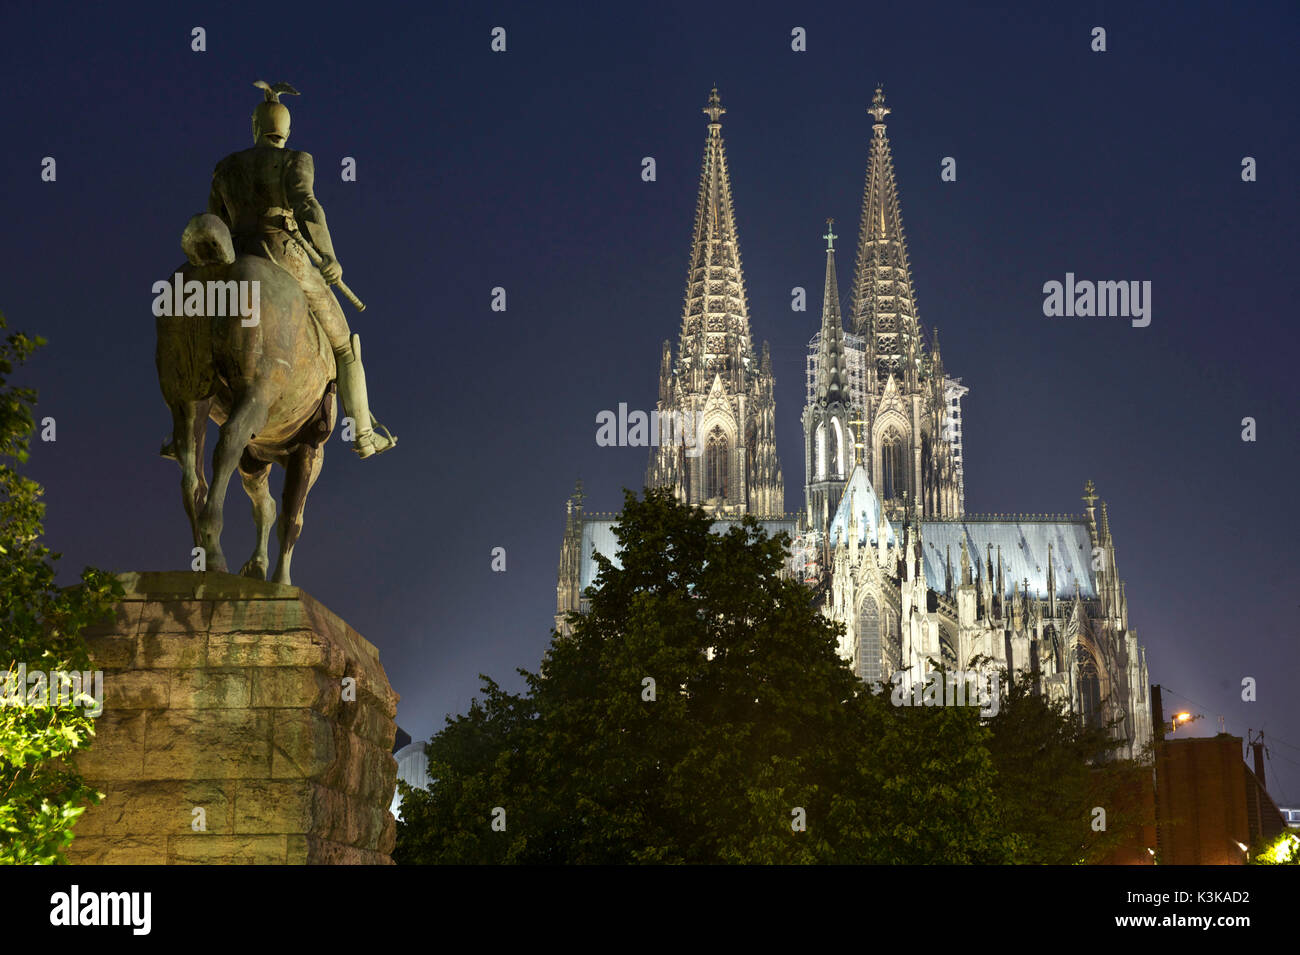 Germania, Nord Reno-Westfalia, Colonia (Köln), statua equestre di Guglielmo II sul ponte Hohenzollern-Brücke e la cattedrale di Köln, patrimonio mondiale dell'UNESCO Foto Stock